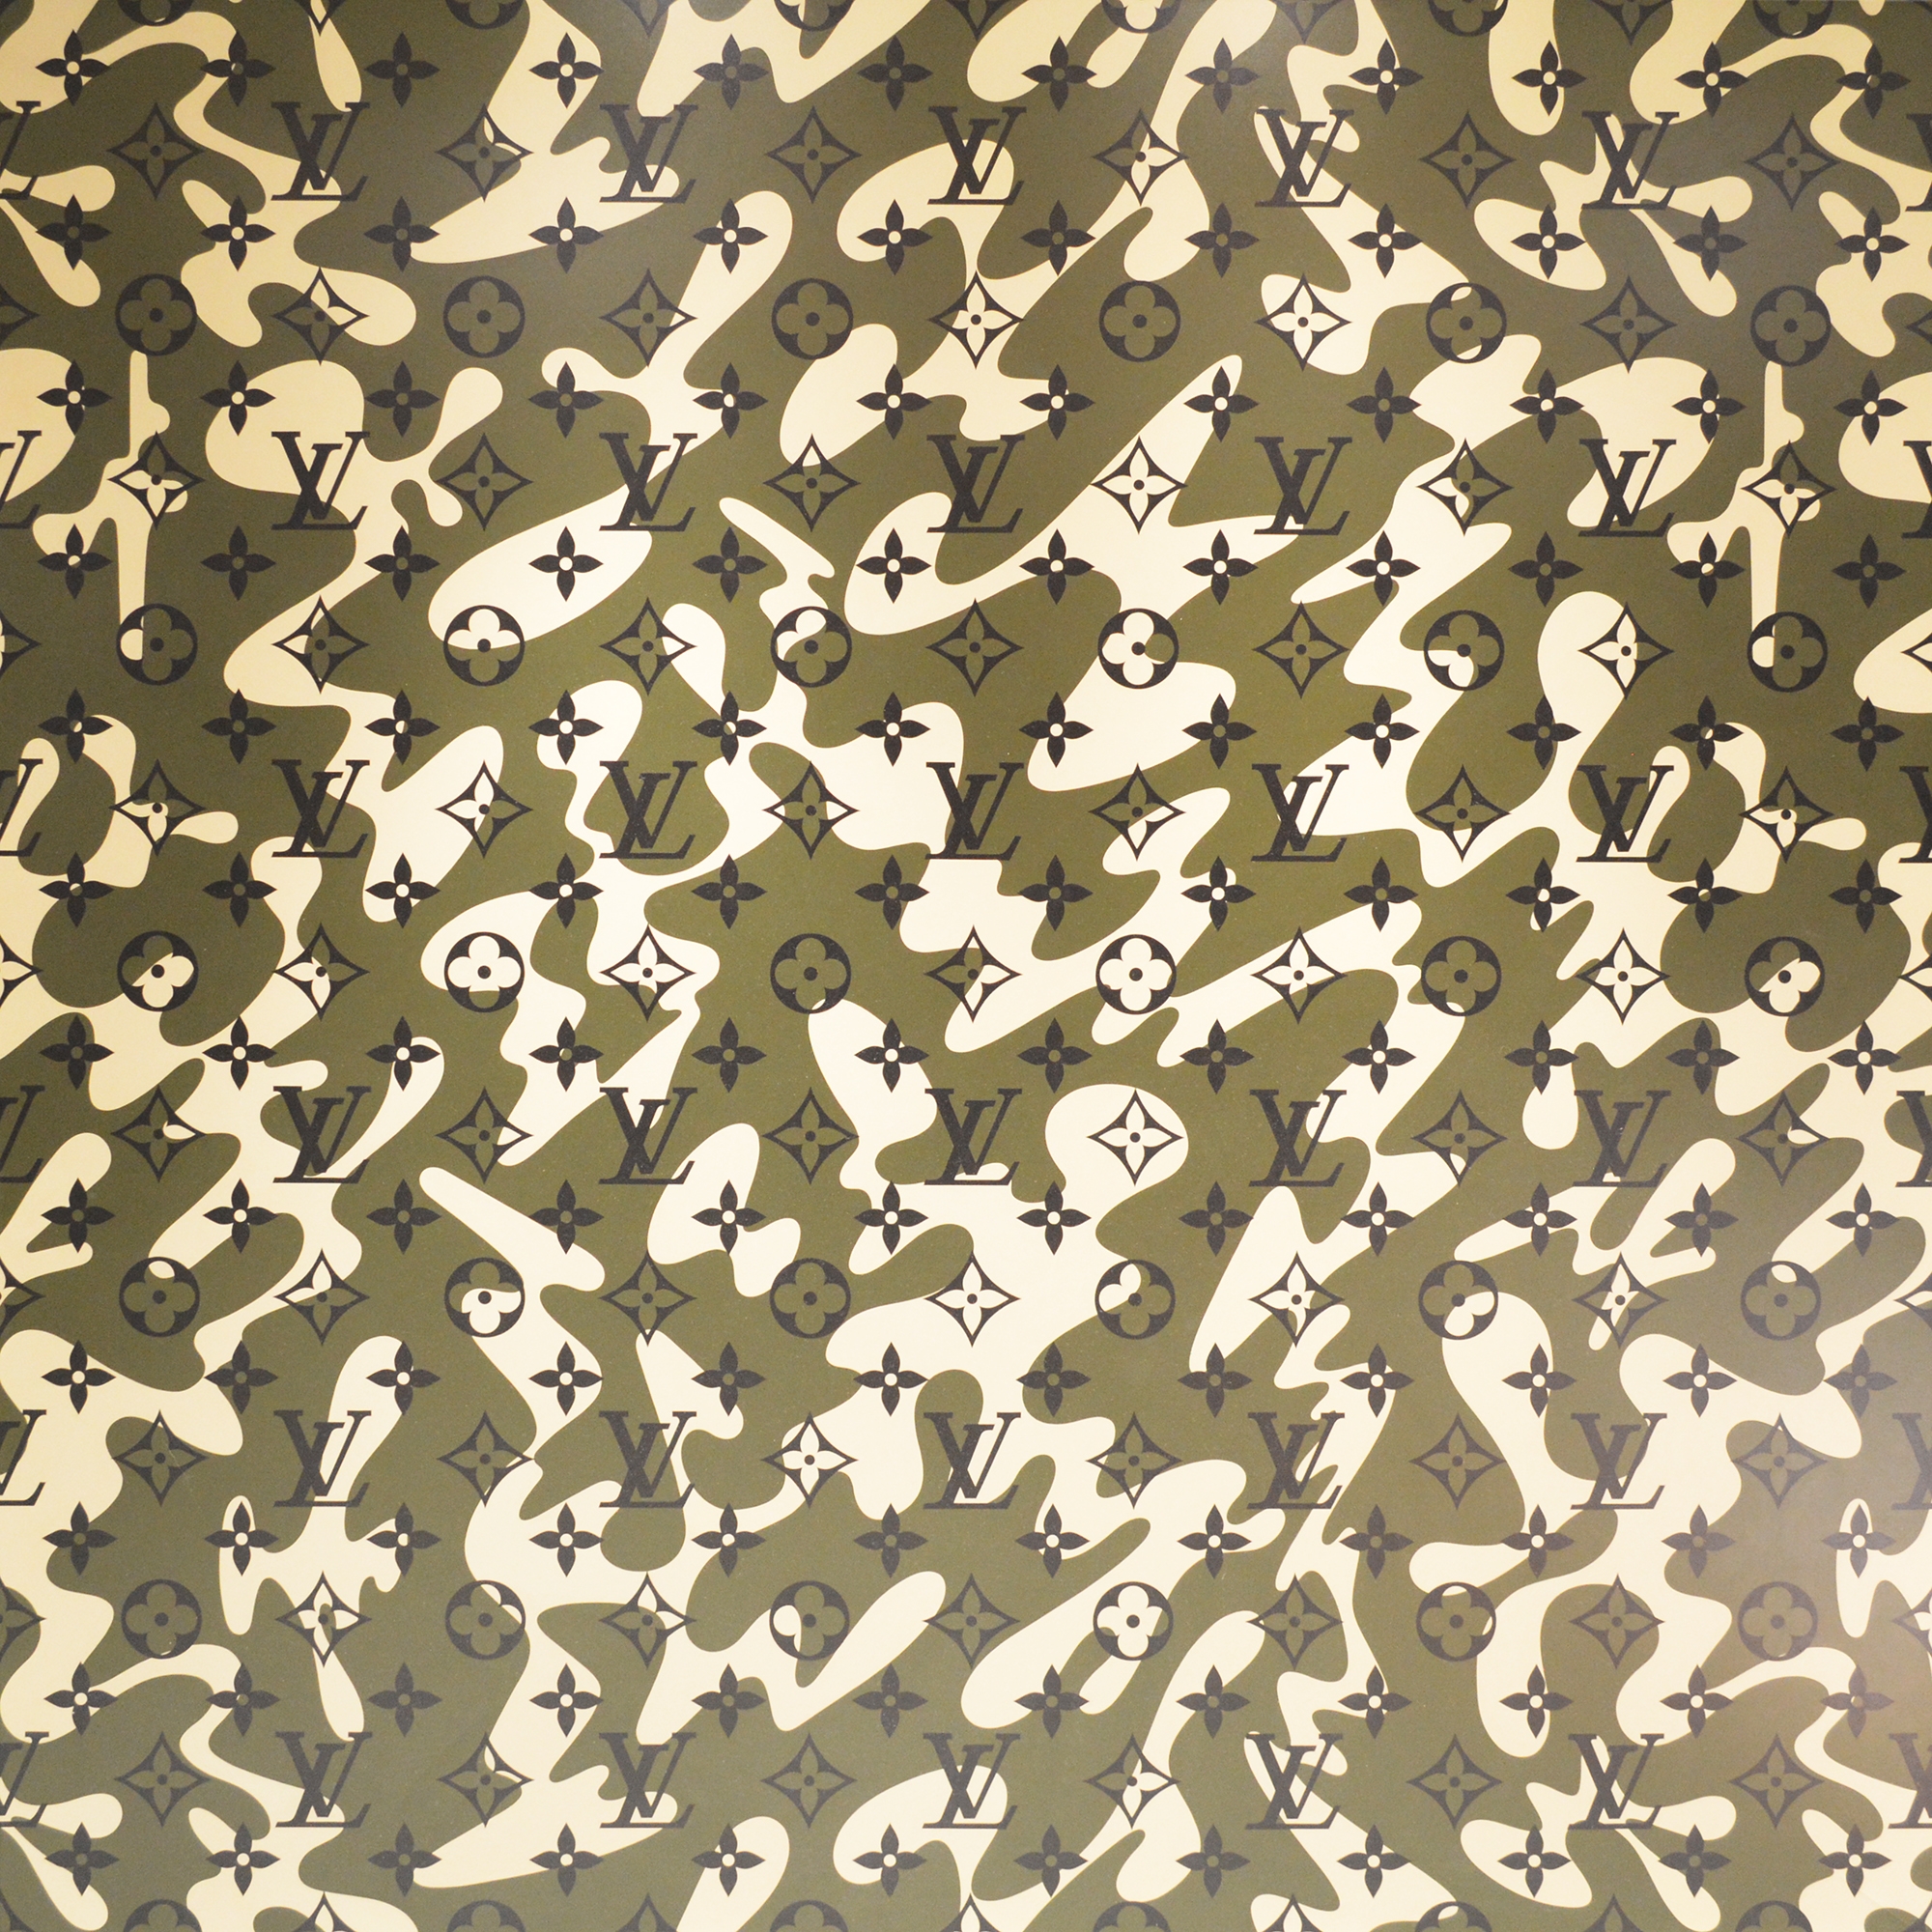 Takashi Murakami X Louis Vuitton. Monogramouflage, 2008. Print in